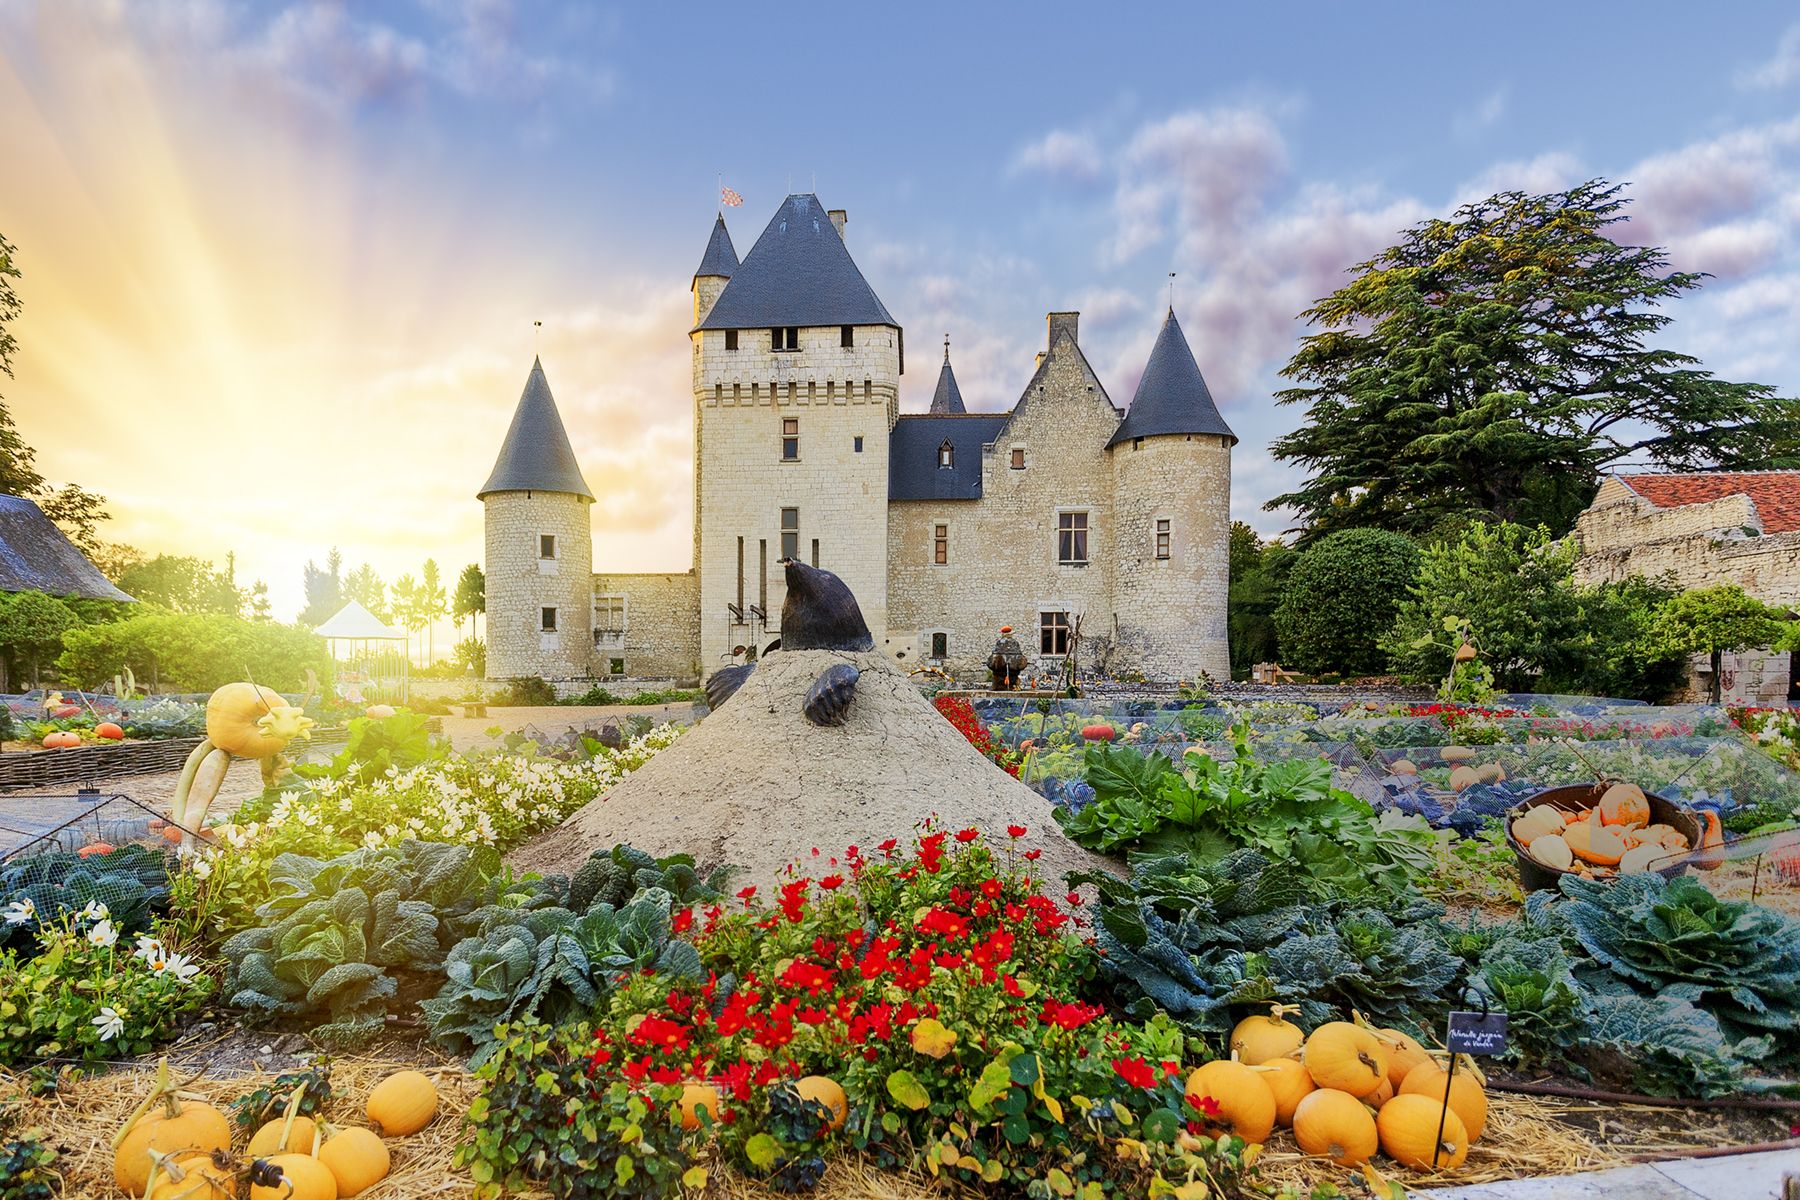 Rivau Castle, Lémeré, Indre-et-Loire, France